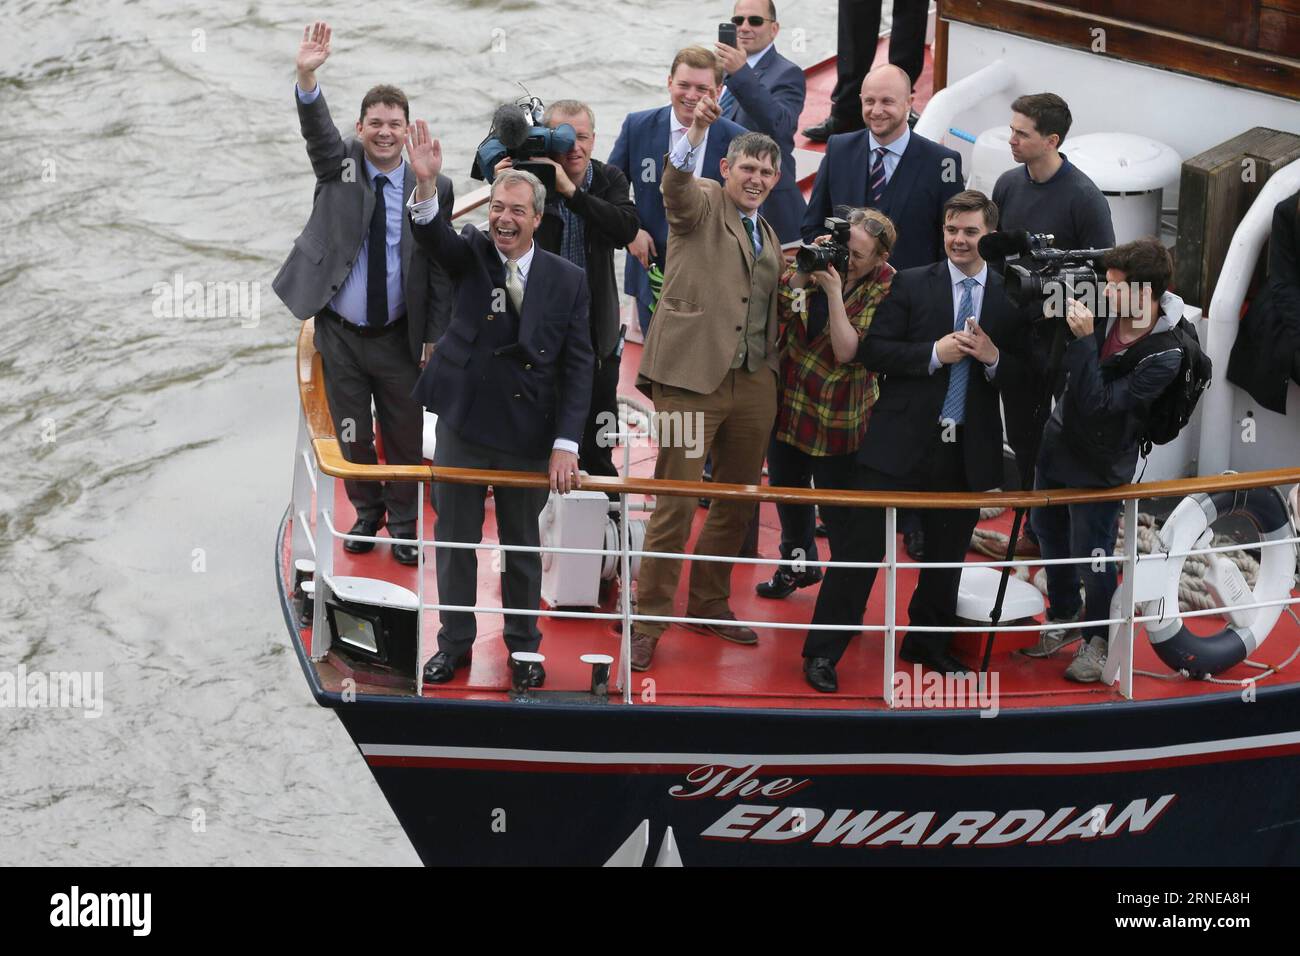 (160615) -- LONDON, 15. Juni 2016 -- Nigel Farage (2. L), Führer der britischen Anti-Immigrations-UKIP, winkt der Menge auf einem Boot einer Flottille während einer Kampagne zur Unterstützung Großbritanniens, die Europäische Union in London, Großbritannien, am 15. Juni 2016 zu verlassen. )(zhf) GROSSBRITANNIEN-LONDON-EU REFERENDUM-FLOTILLA-VOTE LEAVE TimxIreland PUBLICATIONxNOTxINxCHN 160615 London 15. Juni 2016 Nigel Farage 2. L Leader of Britain S Anti Immigration UKIP winkt der Menge AUF einem Boot einer Flottille während einer Kampagne, die Großbritannien unterstützt, die Europäische Union in London zu verlassen Großbritannien AM 15. Juni 2016 zhf Großbritannien London EU Referen Stockfoto